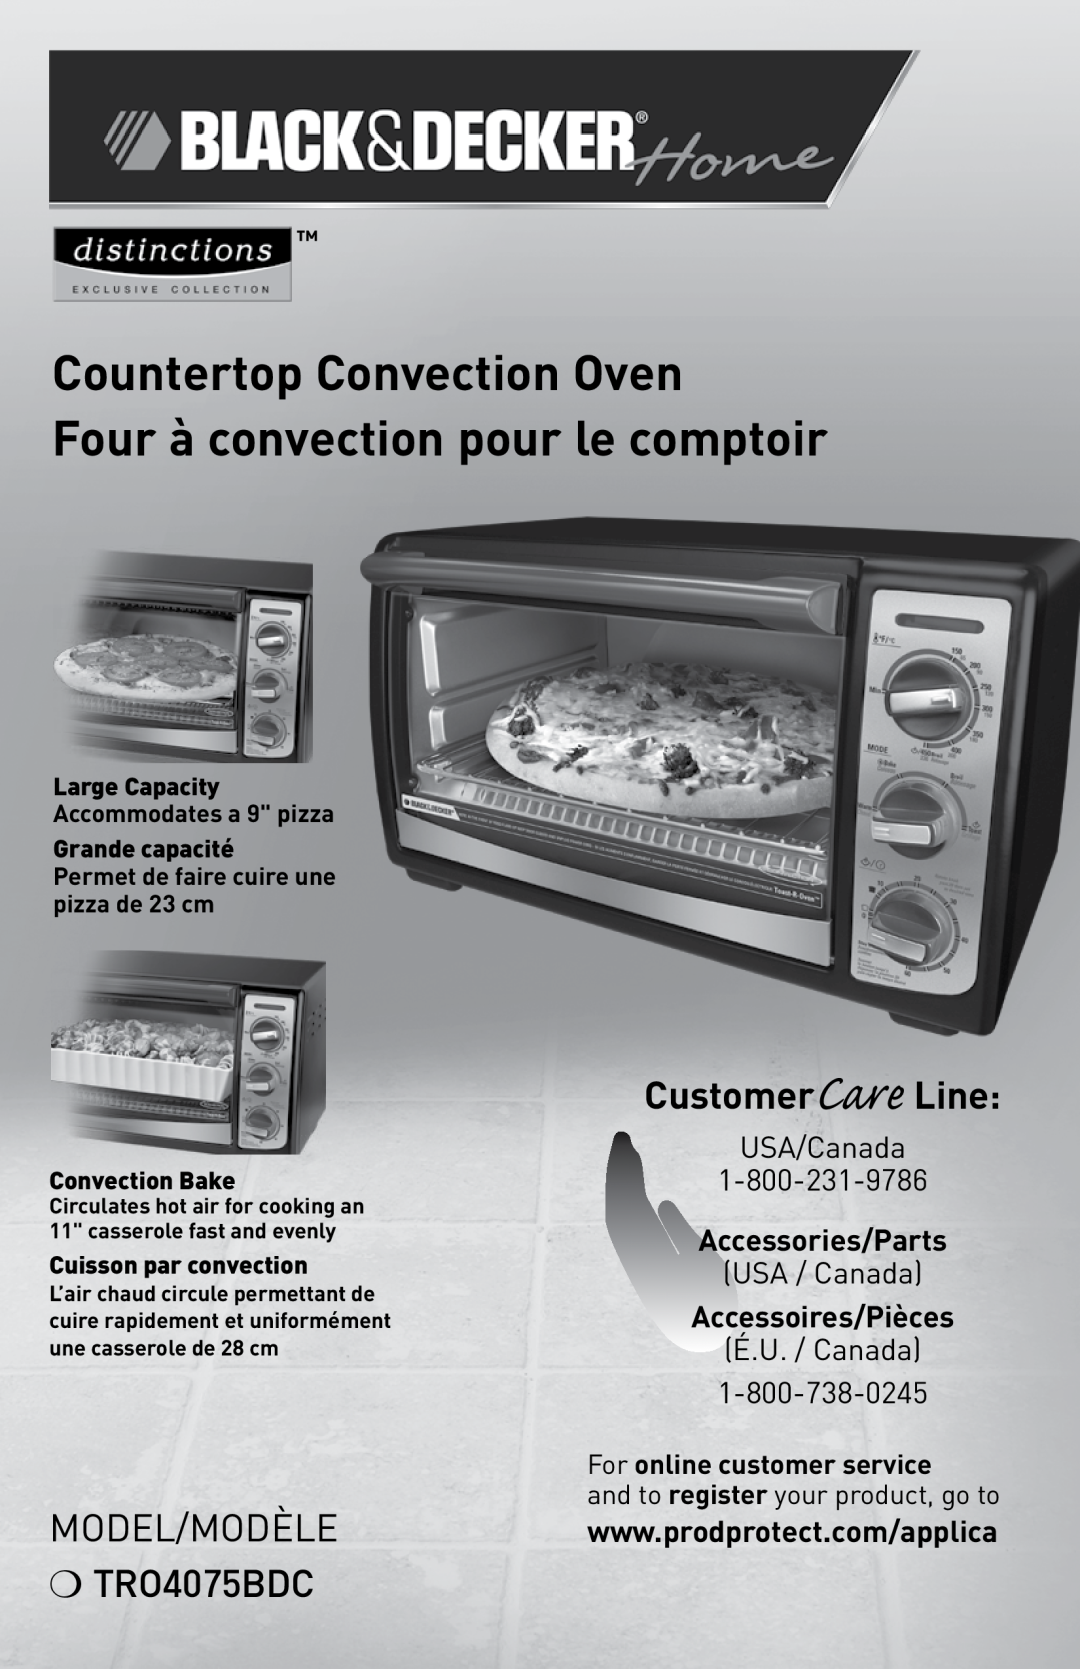 Black & Decker manual Countertop Convection Oven, Four à convection pour le comptoir, Model/ModÈle TRO4075BDC 